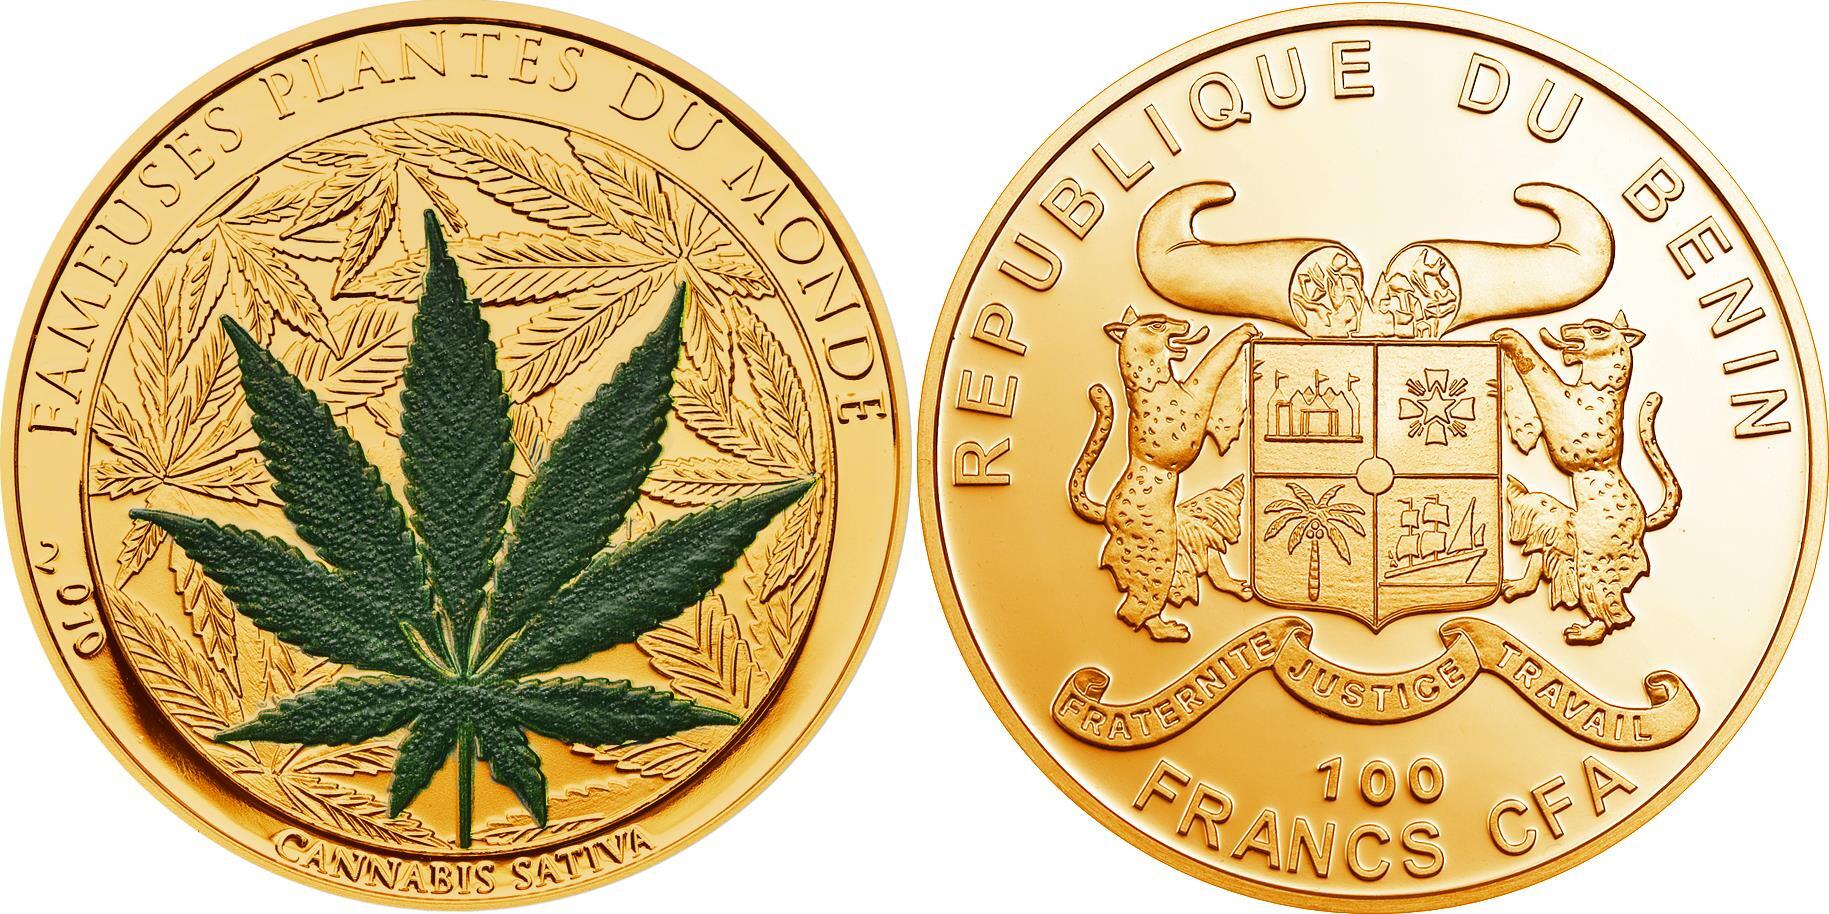 Бенин монета с коноплей ежик вышел из тумана кончилась марихуана